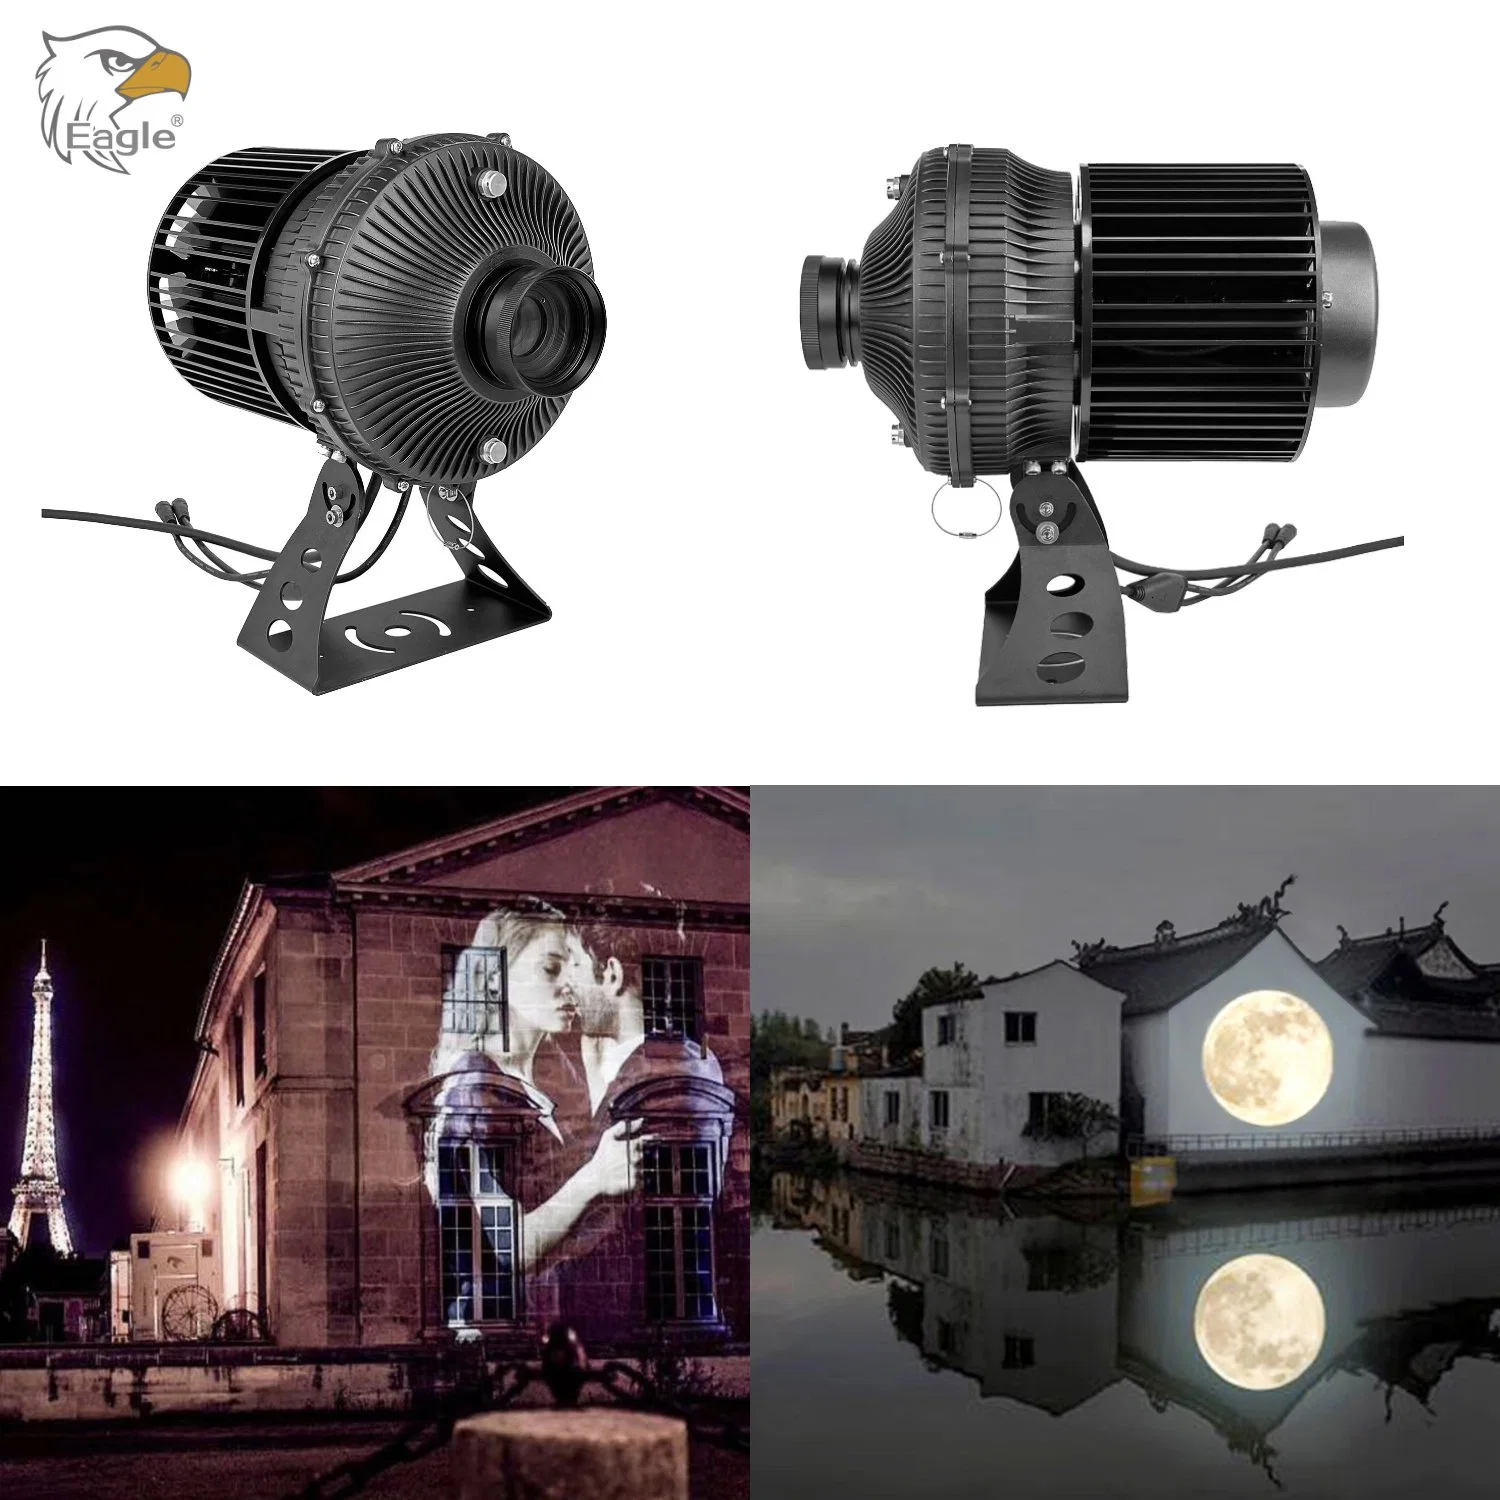 LED 220 W, à prova de água, para exterior, projeção automática de ciclos com várias imagens, paisagem Iluminação luz do projector Gobo